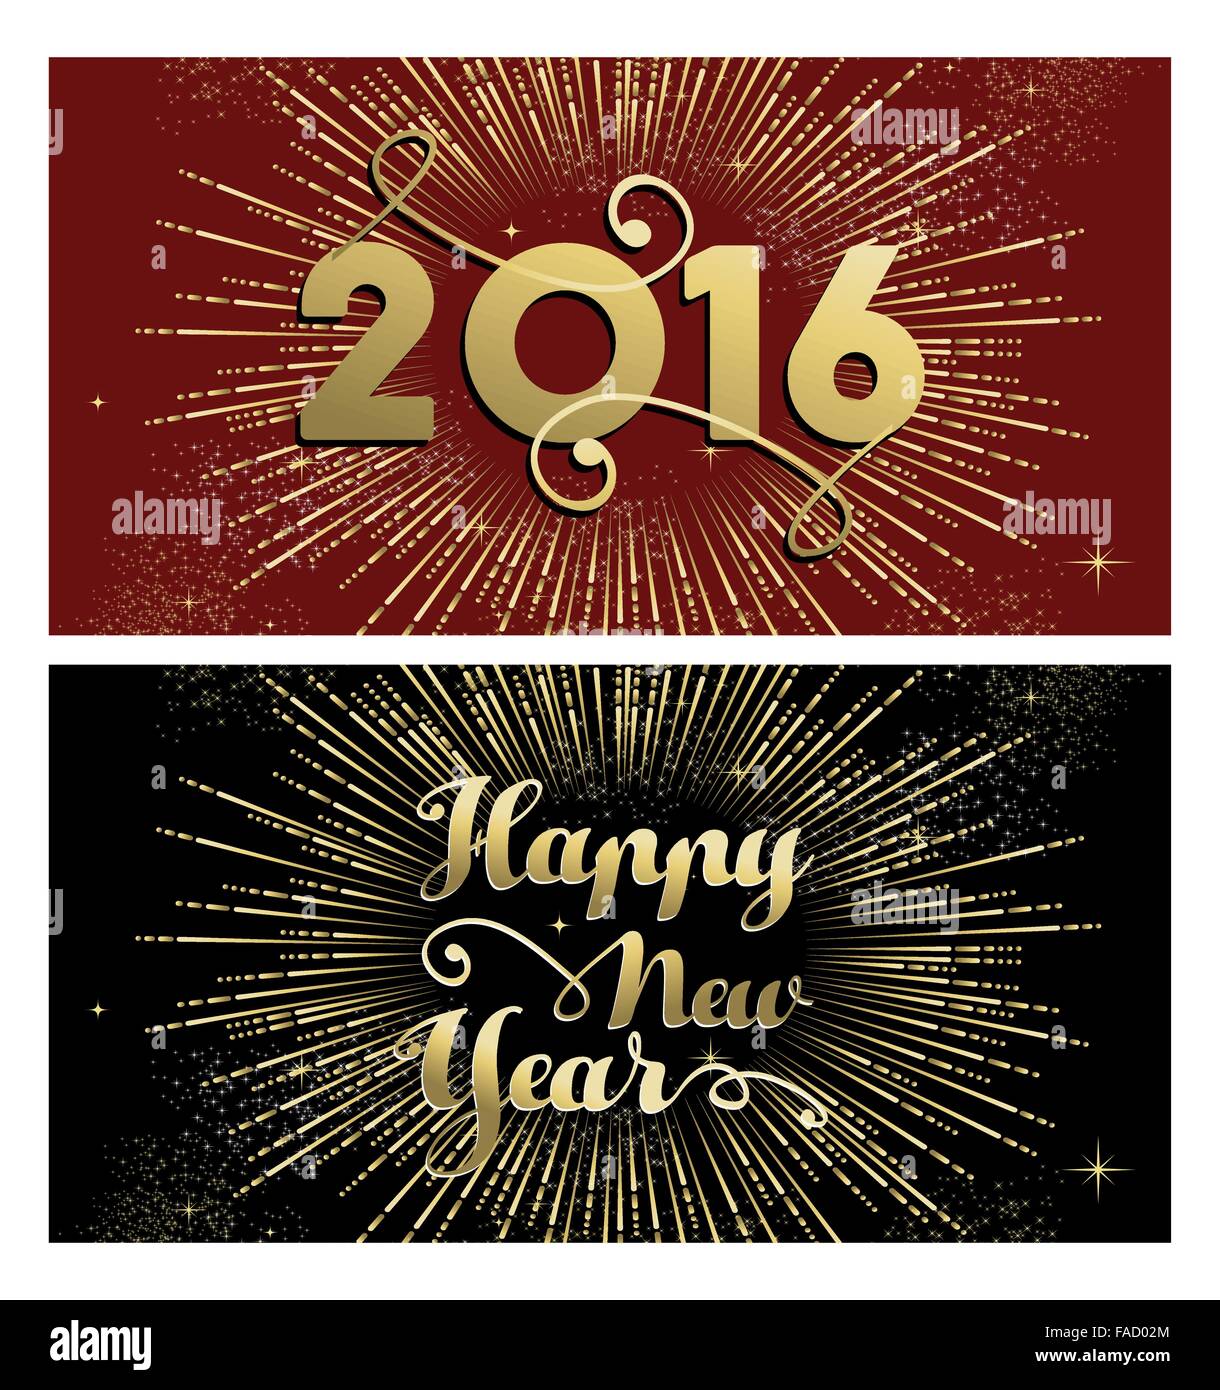 Glückliches neues Jahr 2016 Banner Grußkarte set mit gold Text und Feuerwerk Explosion. EPS10 Vektor. Stock Vektor